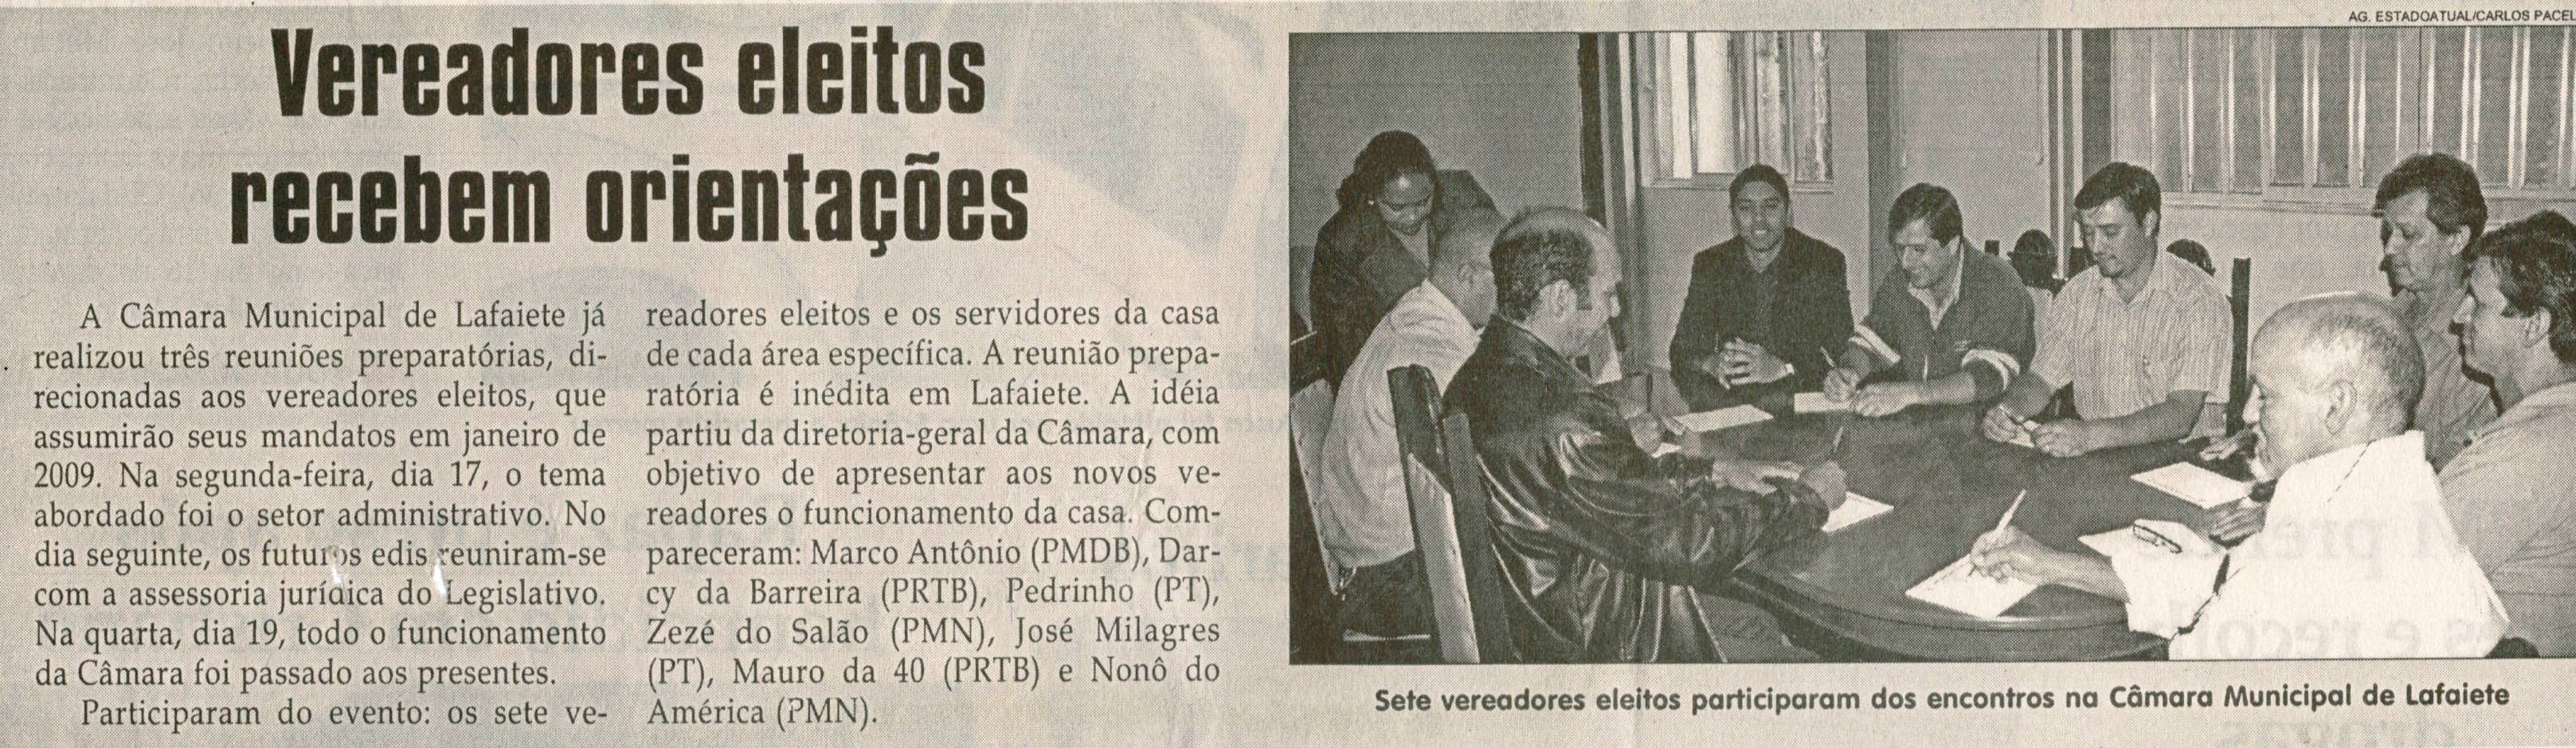 Vereadores eleitos recebem orientações. Jornal Correio da Cidade, Conselheiro Lafaiete, 22 nov. 2008, p. 02.